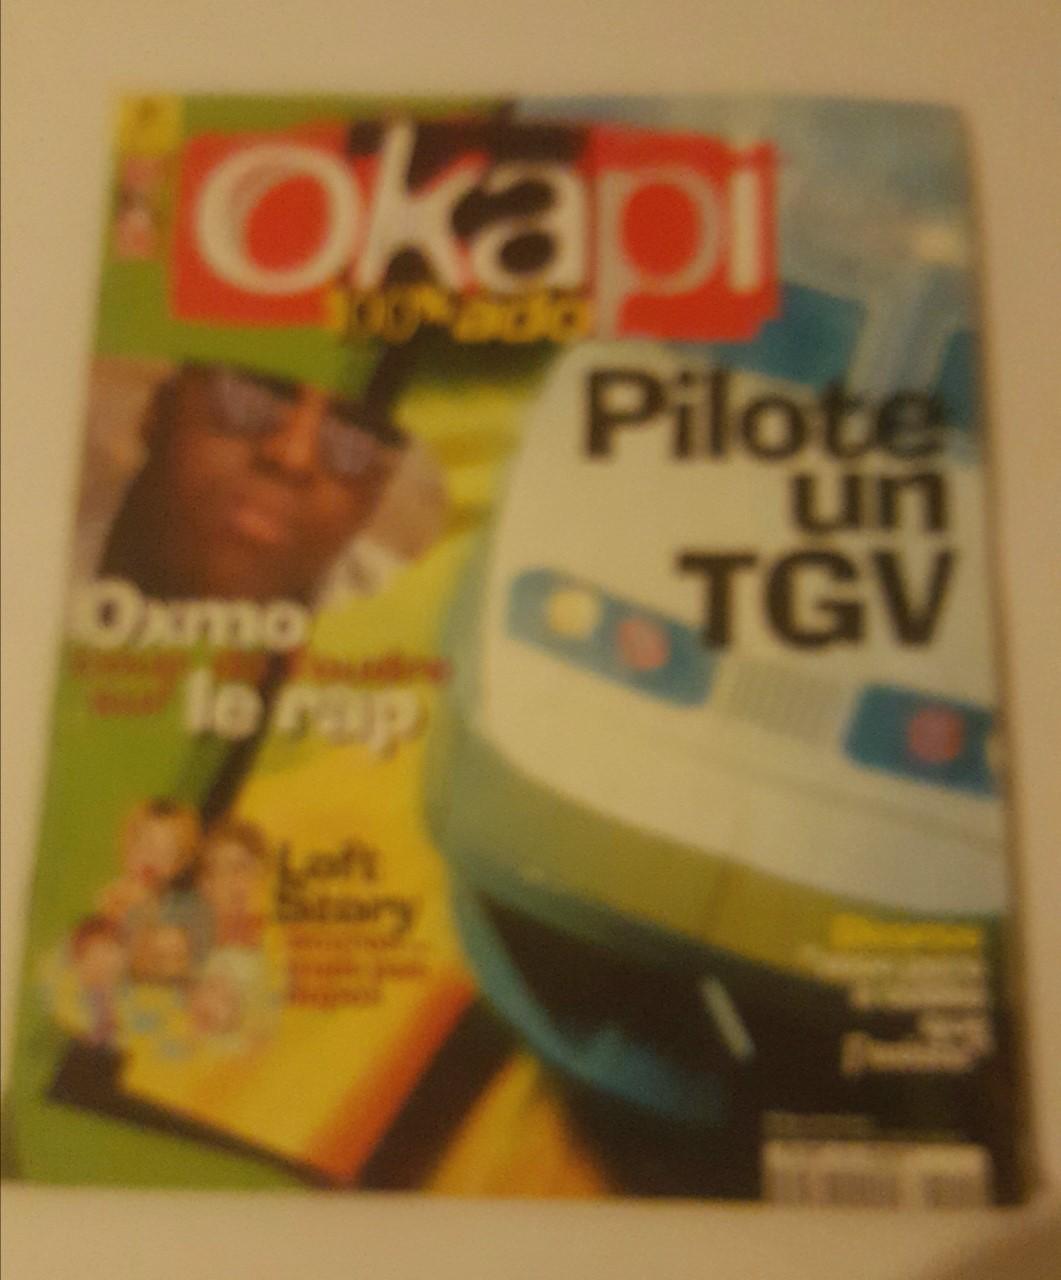 troc de troc j'échange magazine okapi : "pilote un tgv" image 0